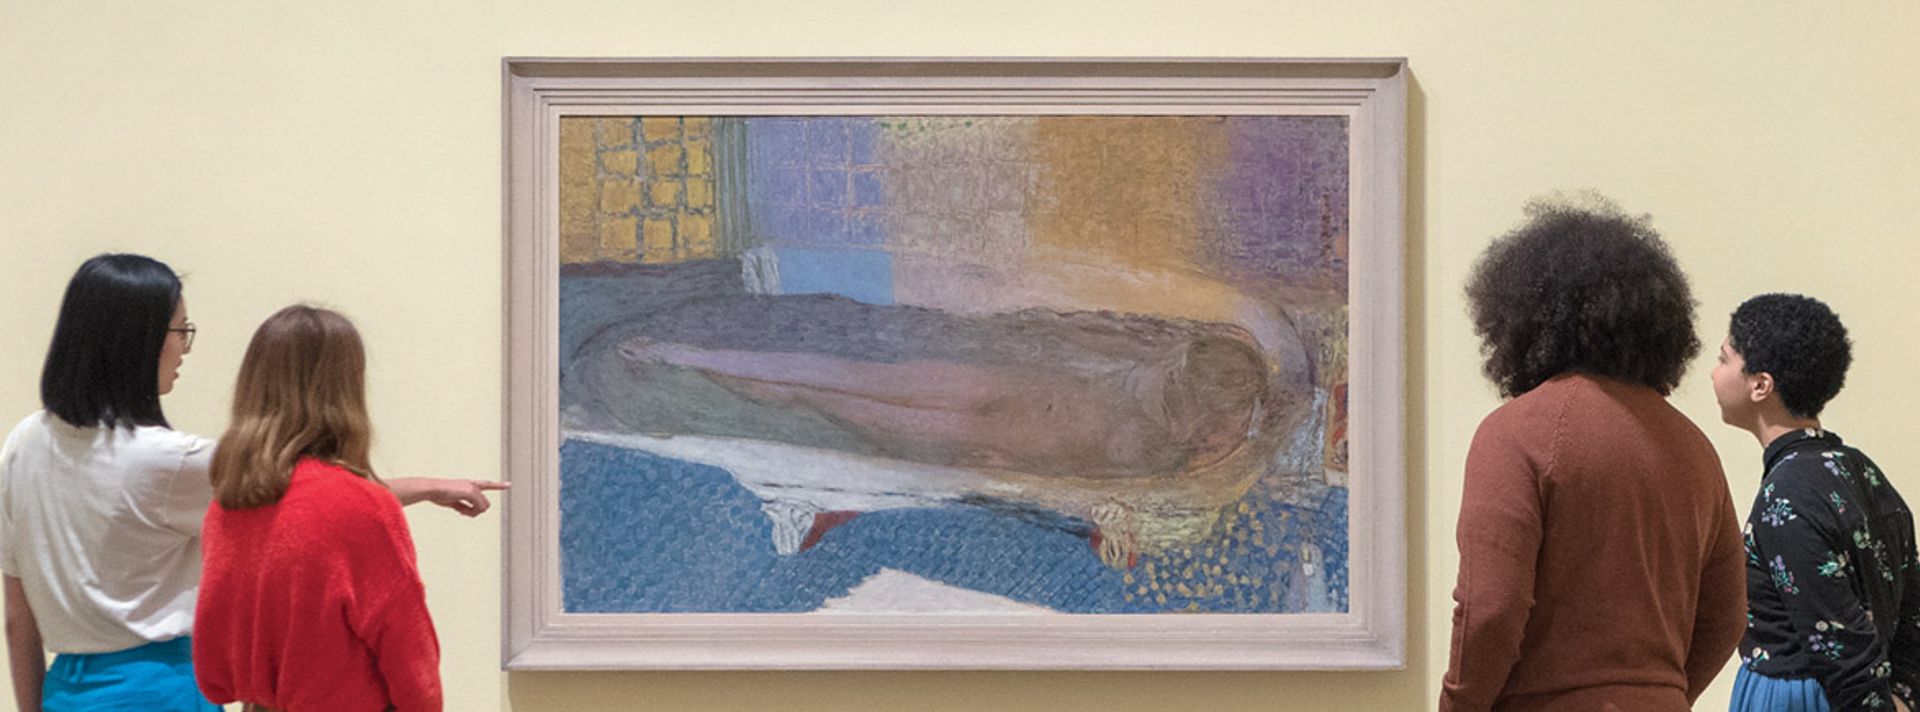 Admiring the work of Pierre Bonnard at Tate Modern, London © Tate 2019